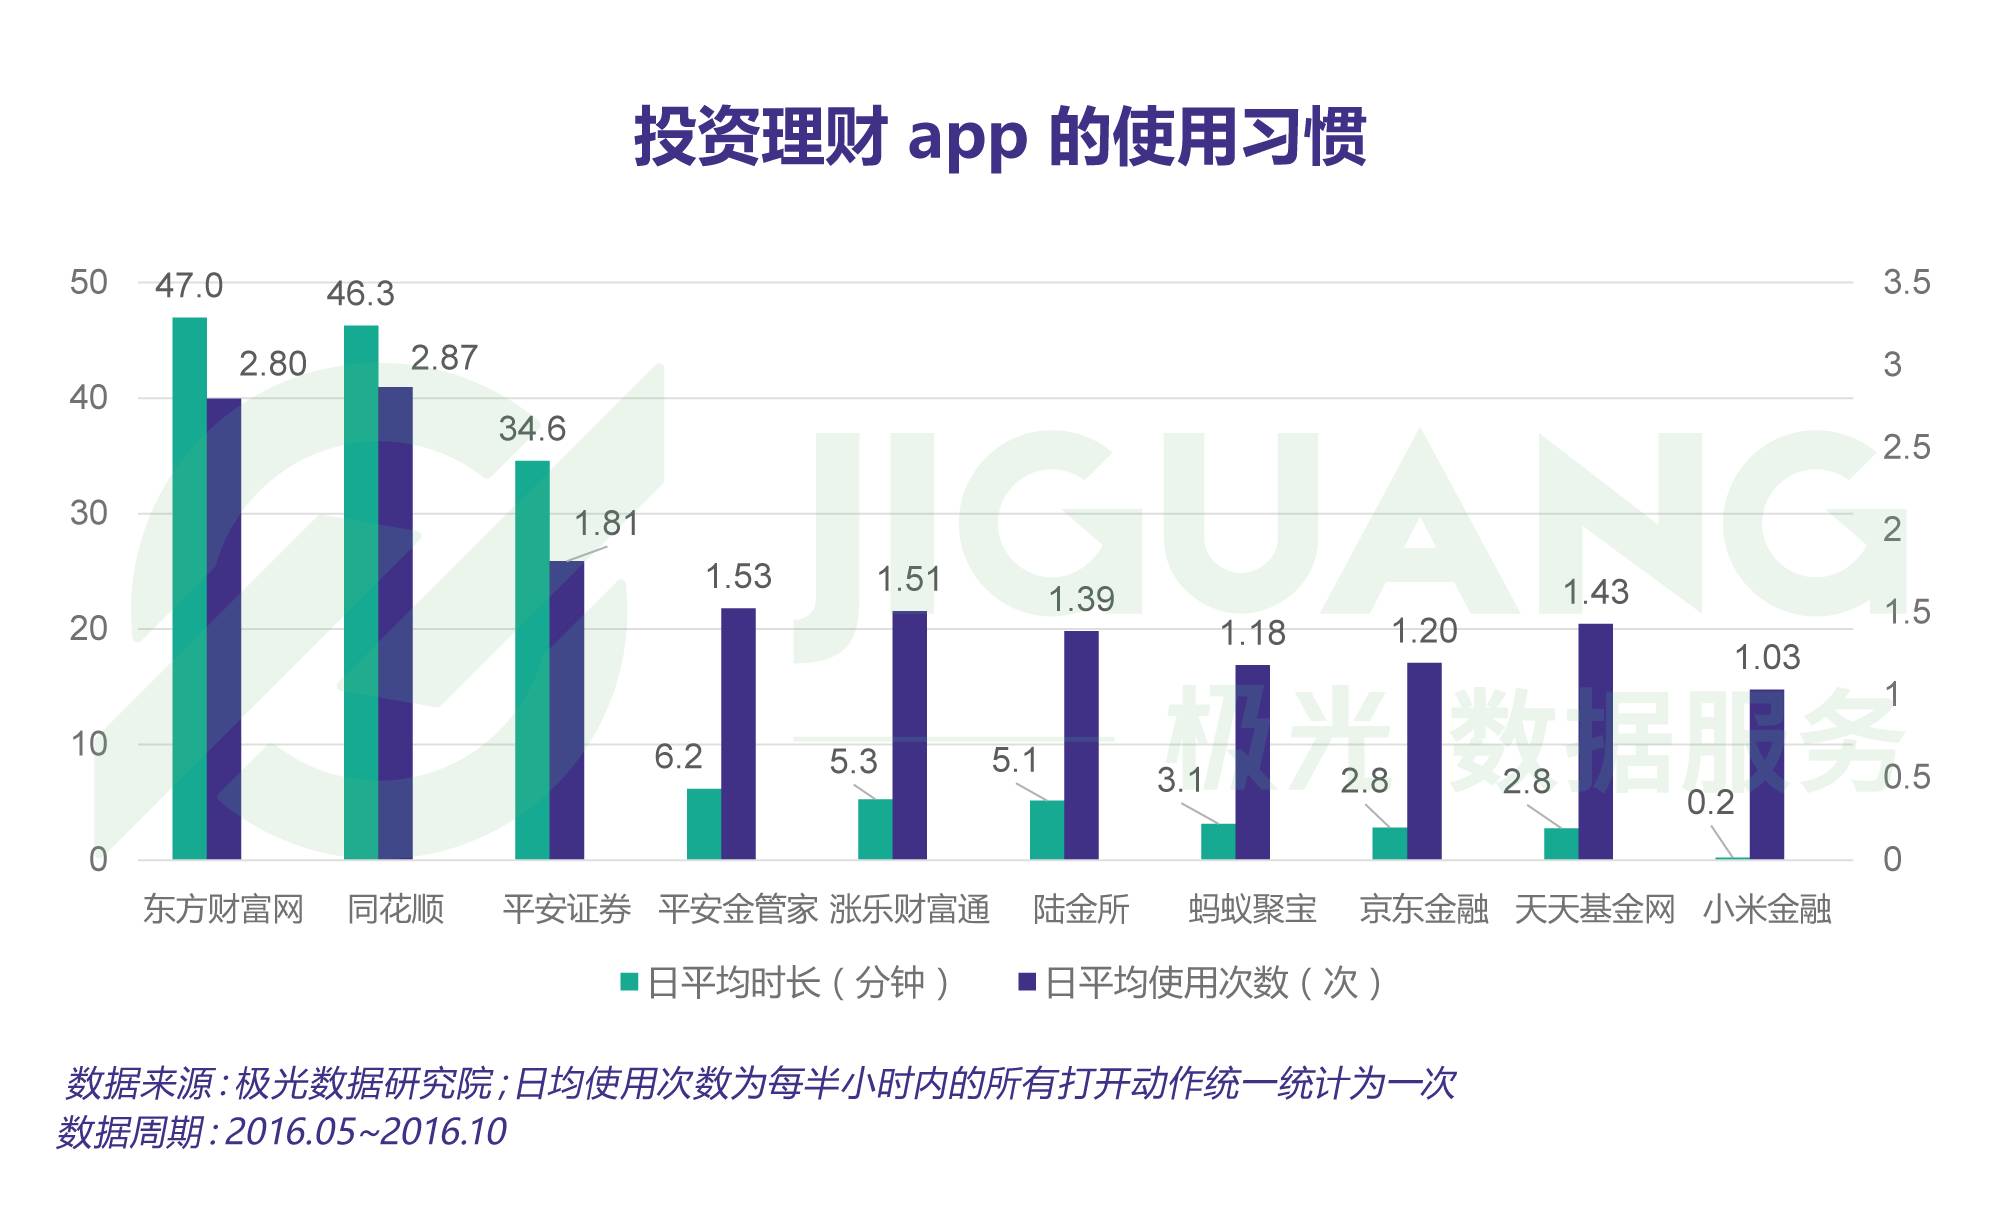 投资理财 app 研究报告：10%的用户用三款以上 app 来增强收益